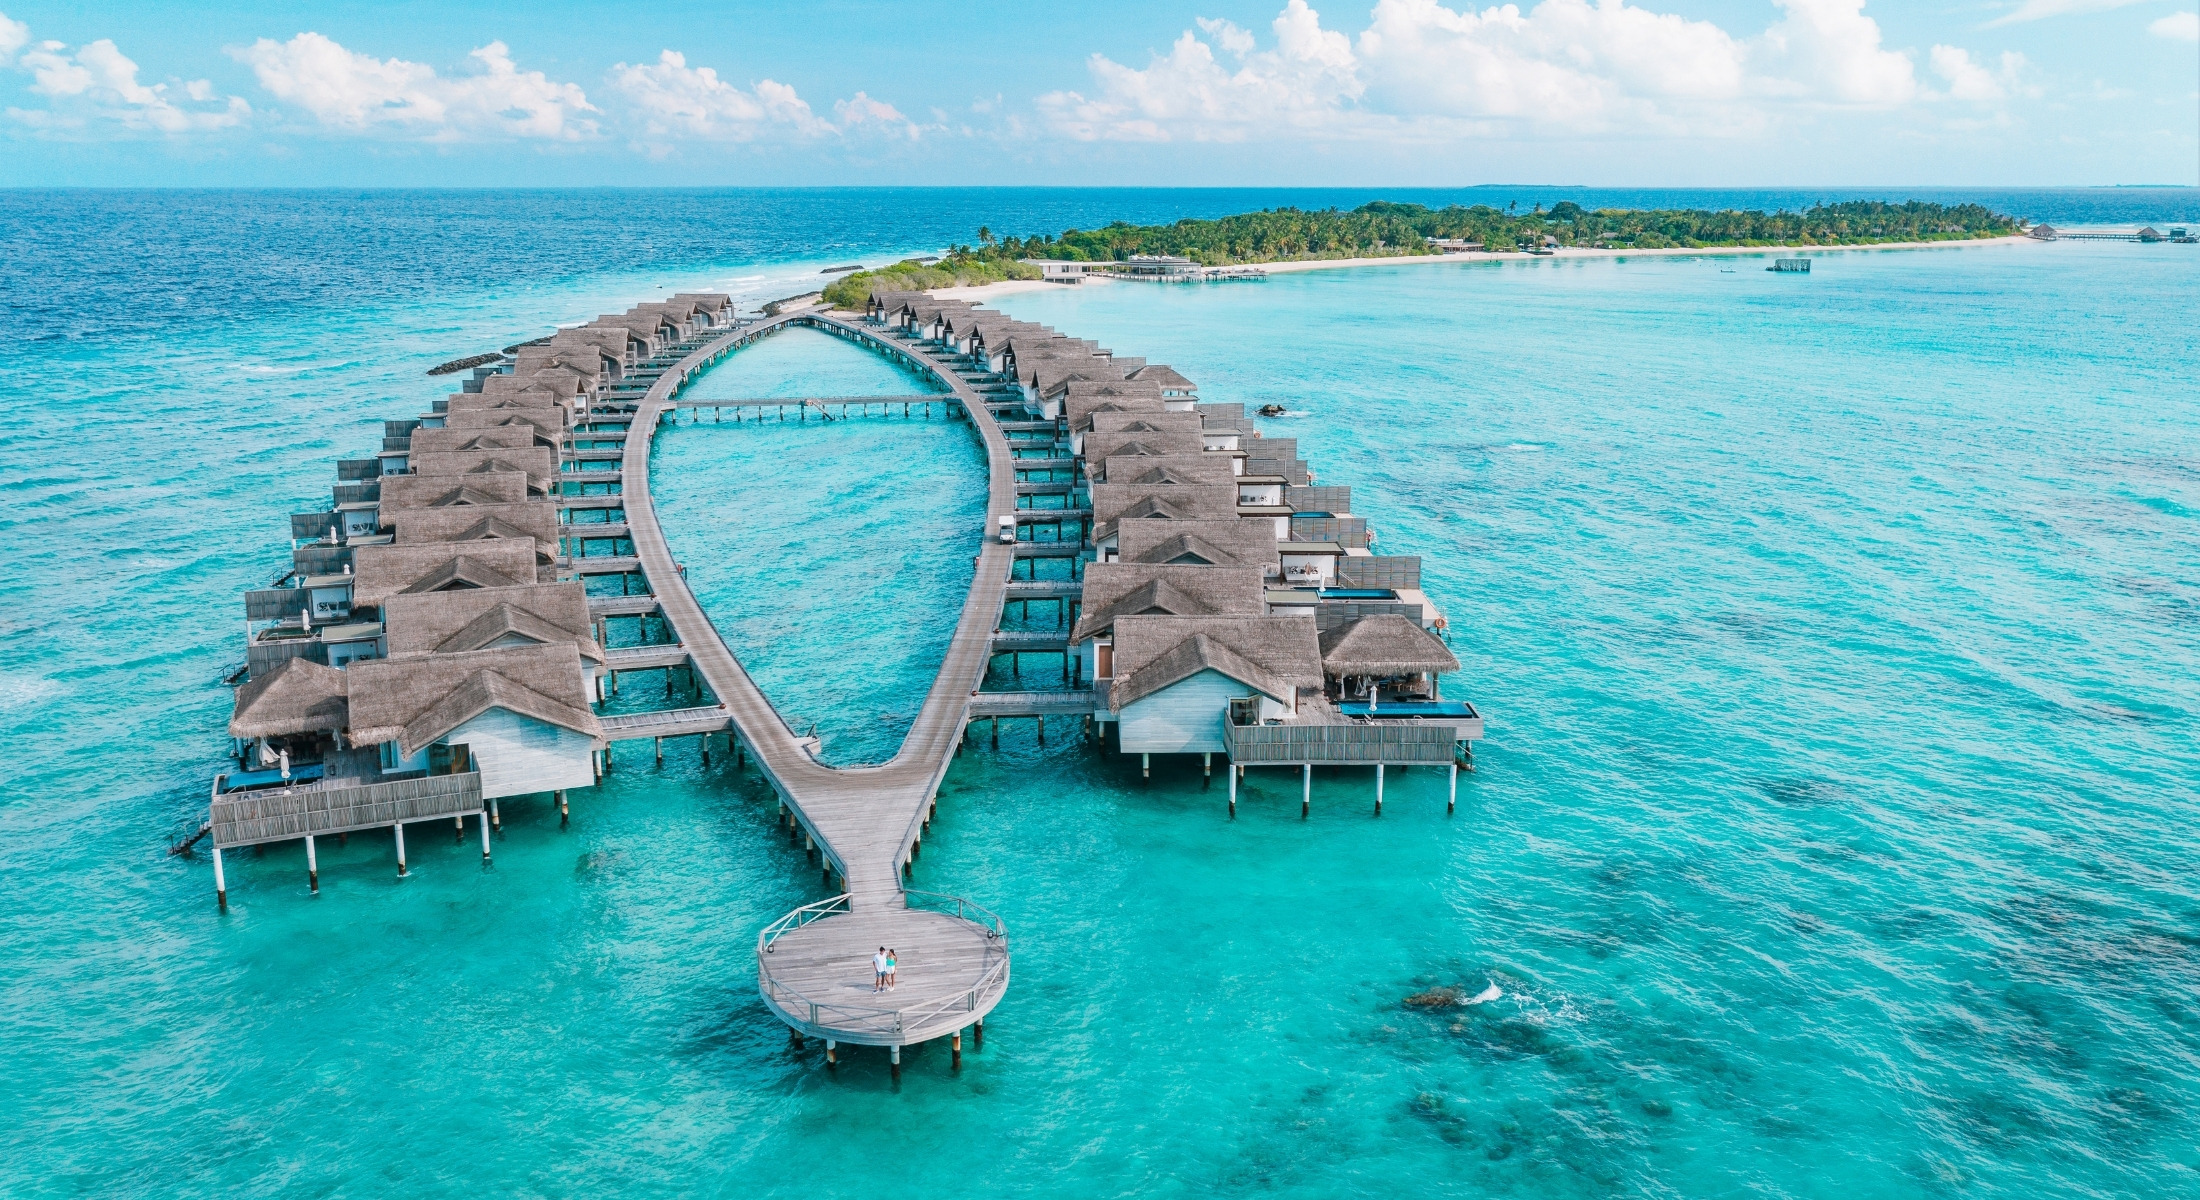 Fairmont Maldives Sirru Fen Fushi Resort